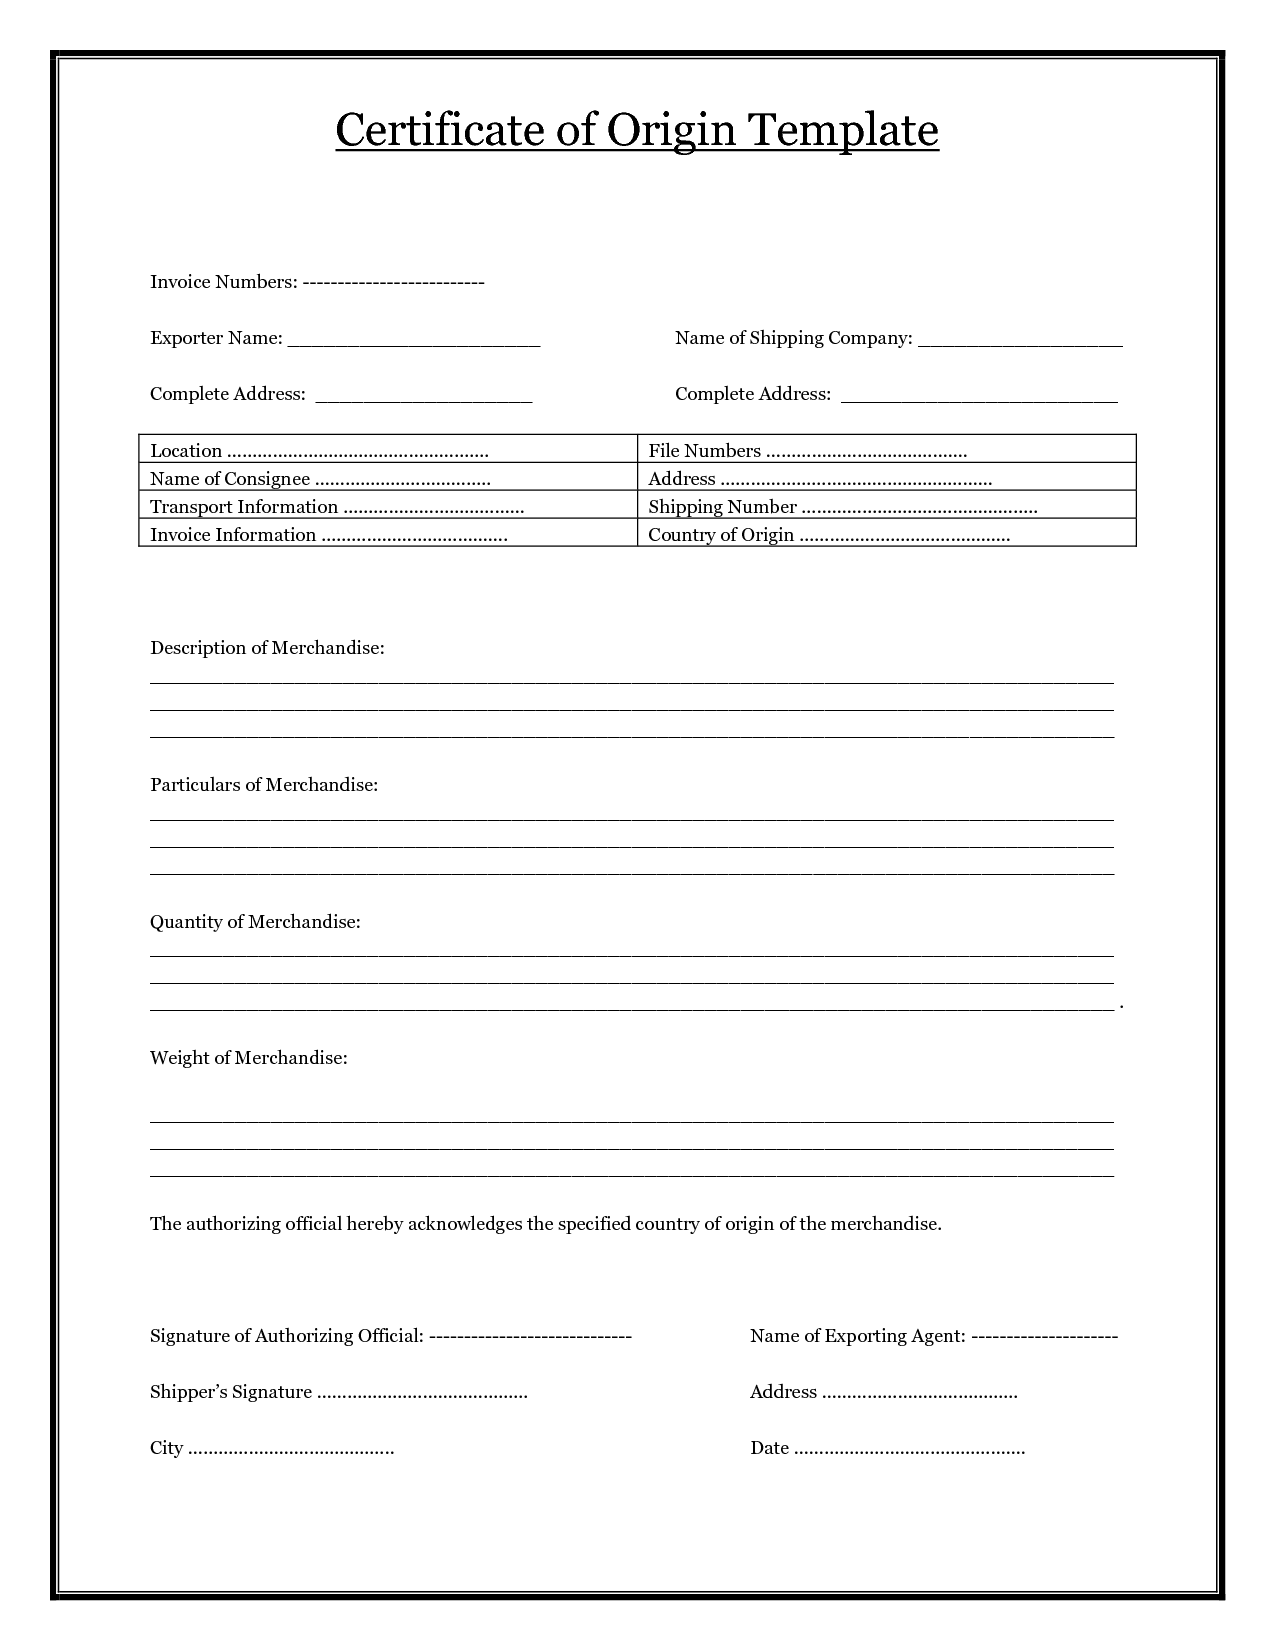 PDF-Certificate-of-Origin-Template